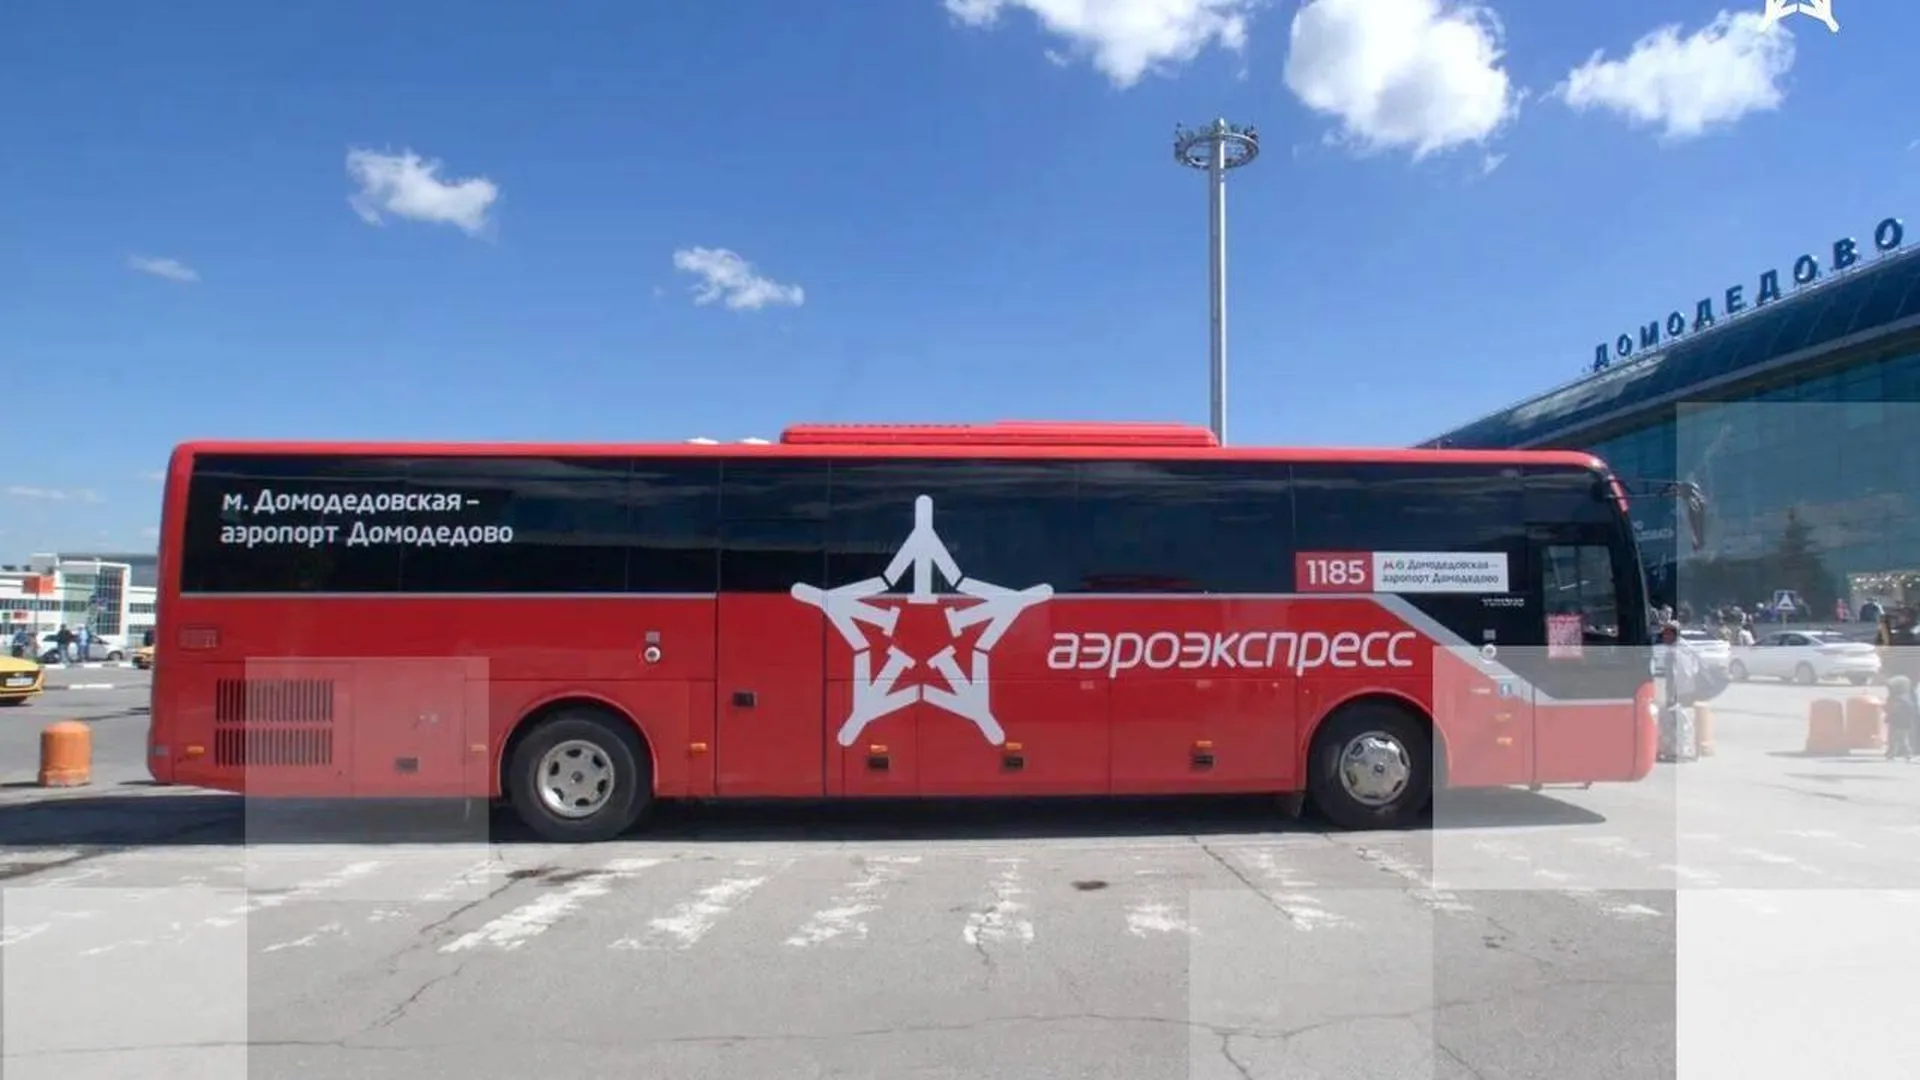 Экспресс-автобусы до аэропорта Домодедово курсируют каждые 15 минут